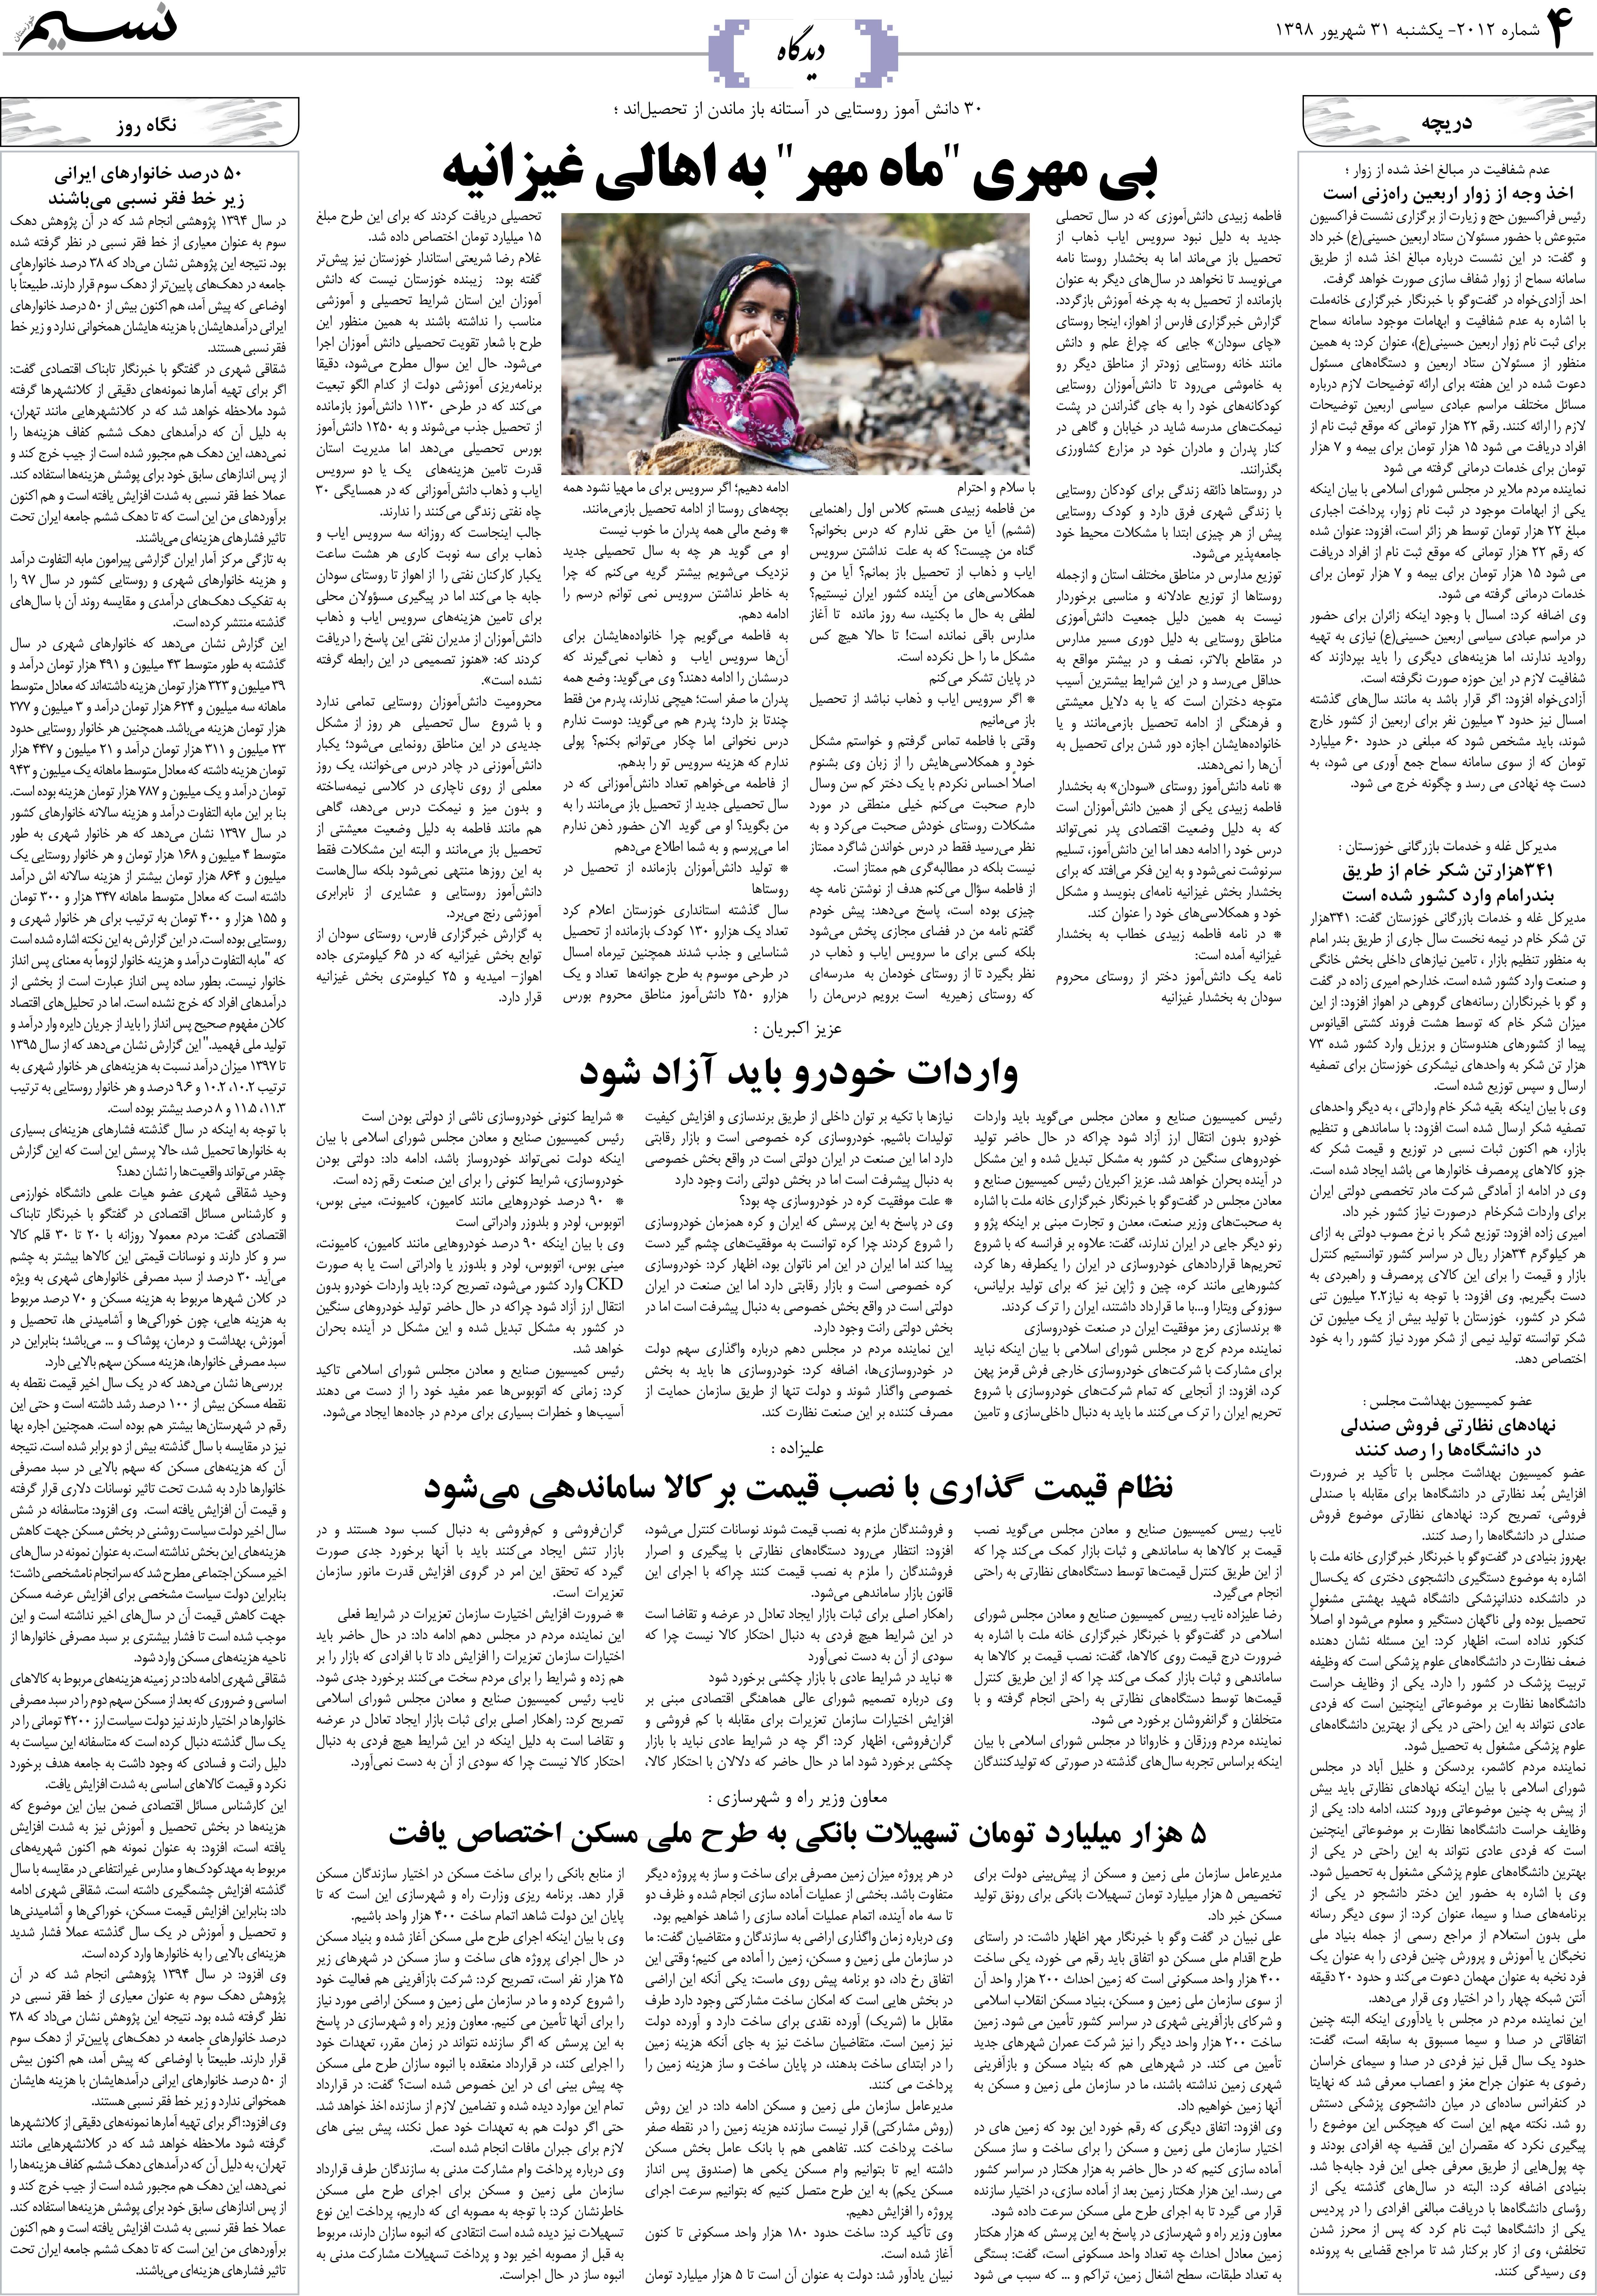 صفحه دیدگاه روزنامه نسیم شماره 2012